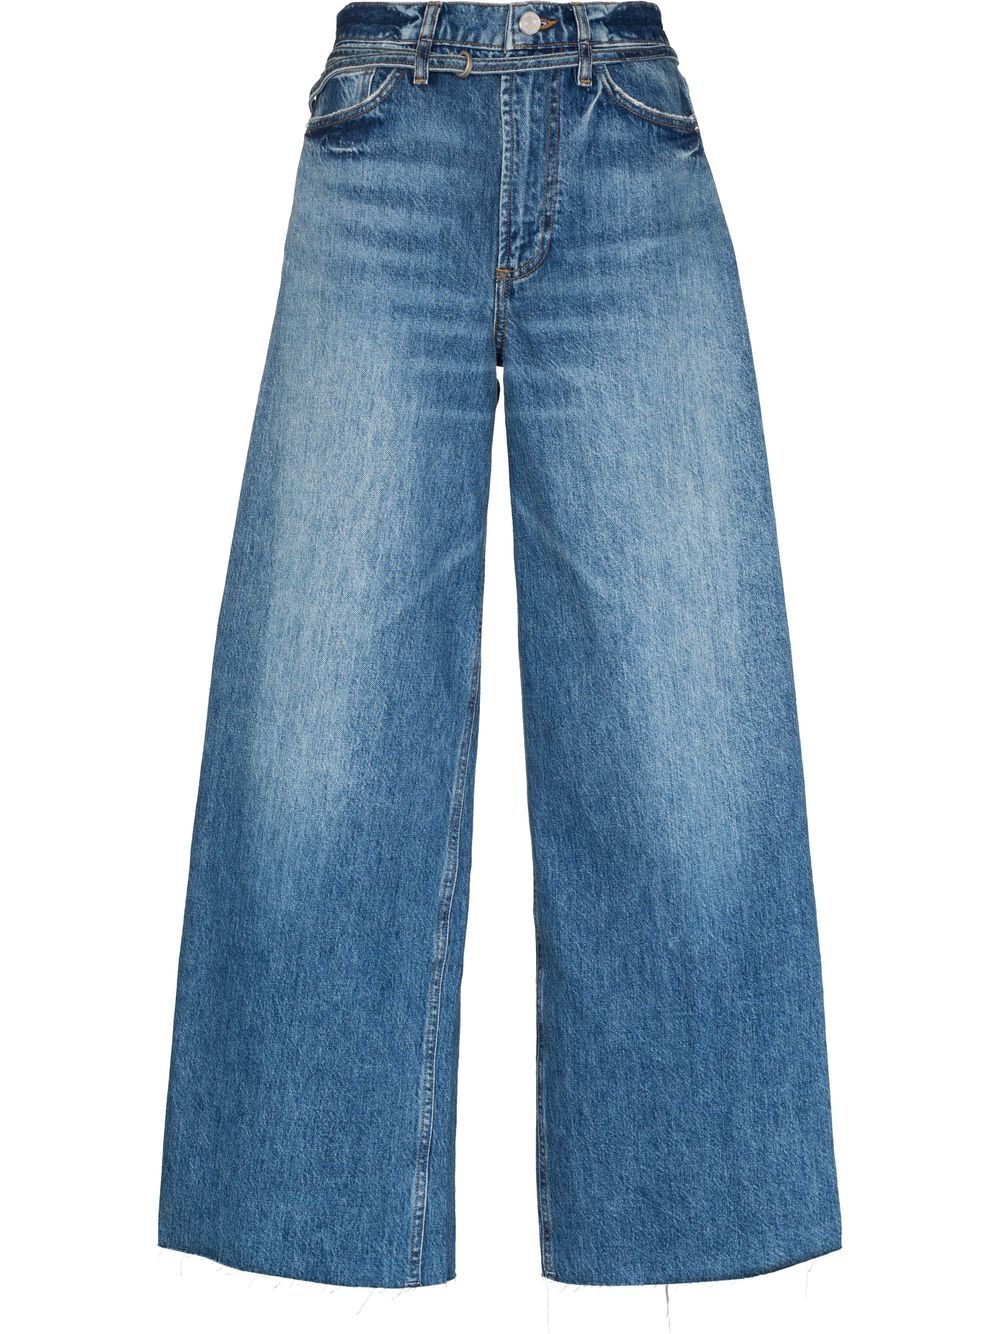 FRAME faded-effect boyfriend-cut jeans